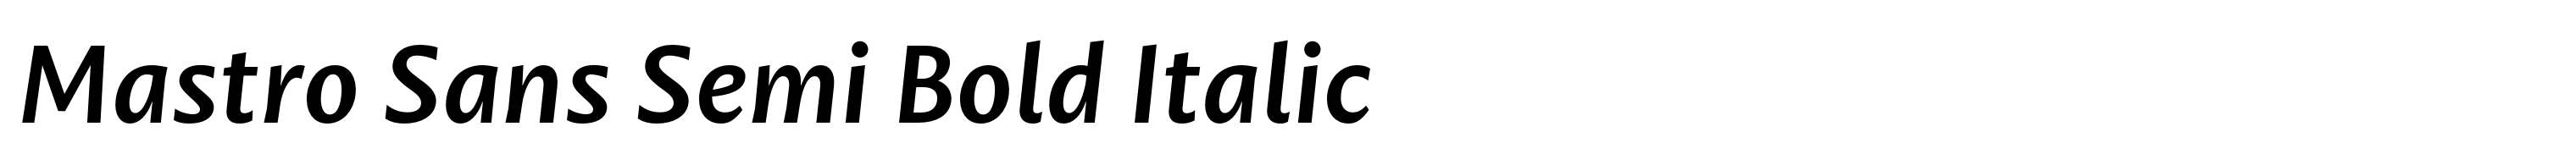 Mastro Sans Semi Bold Italic